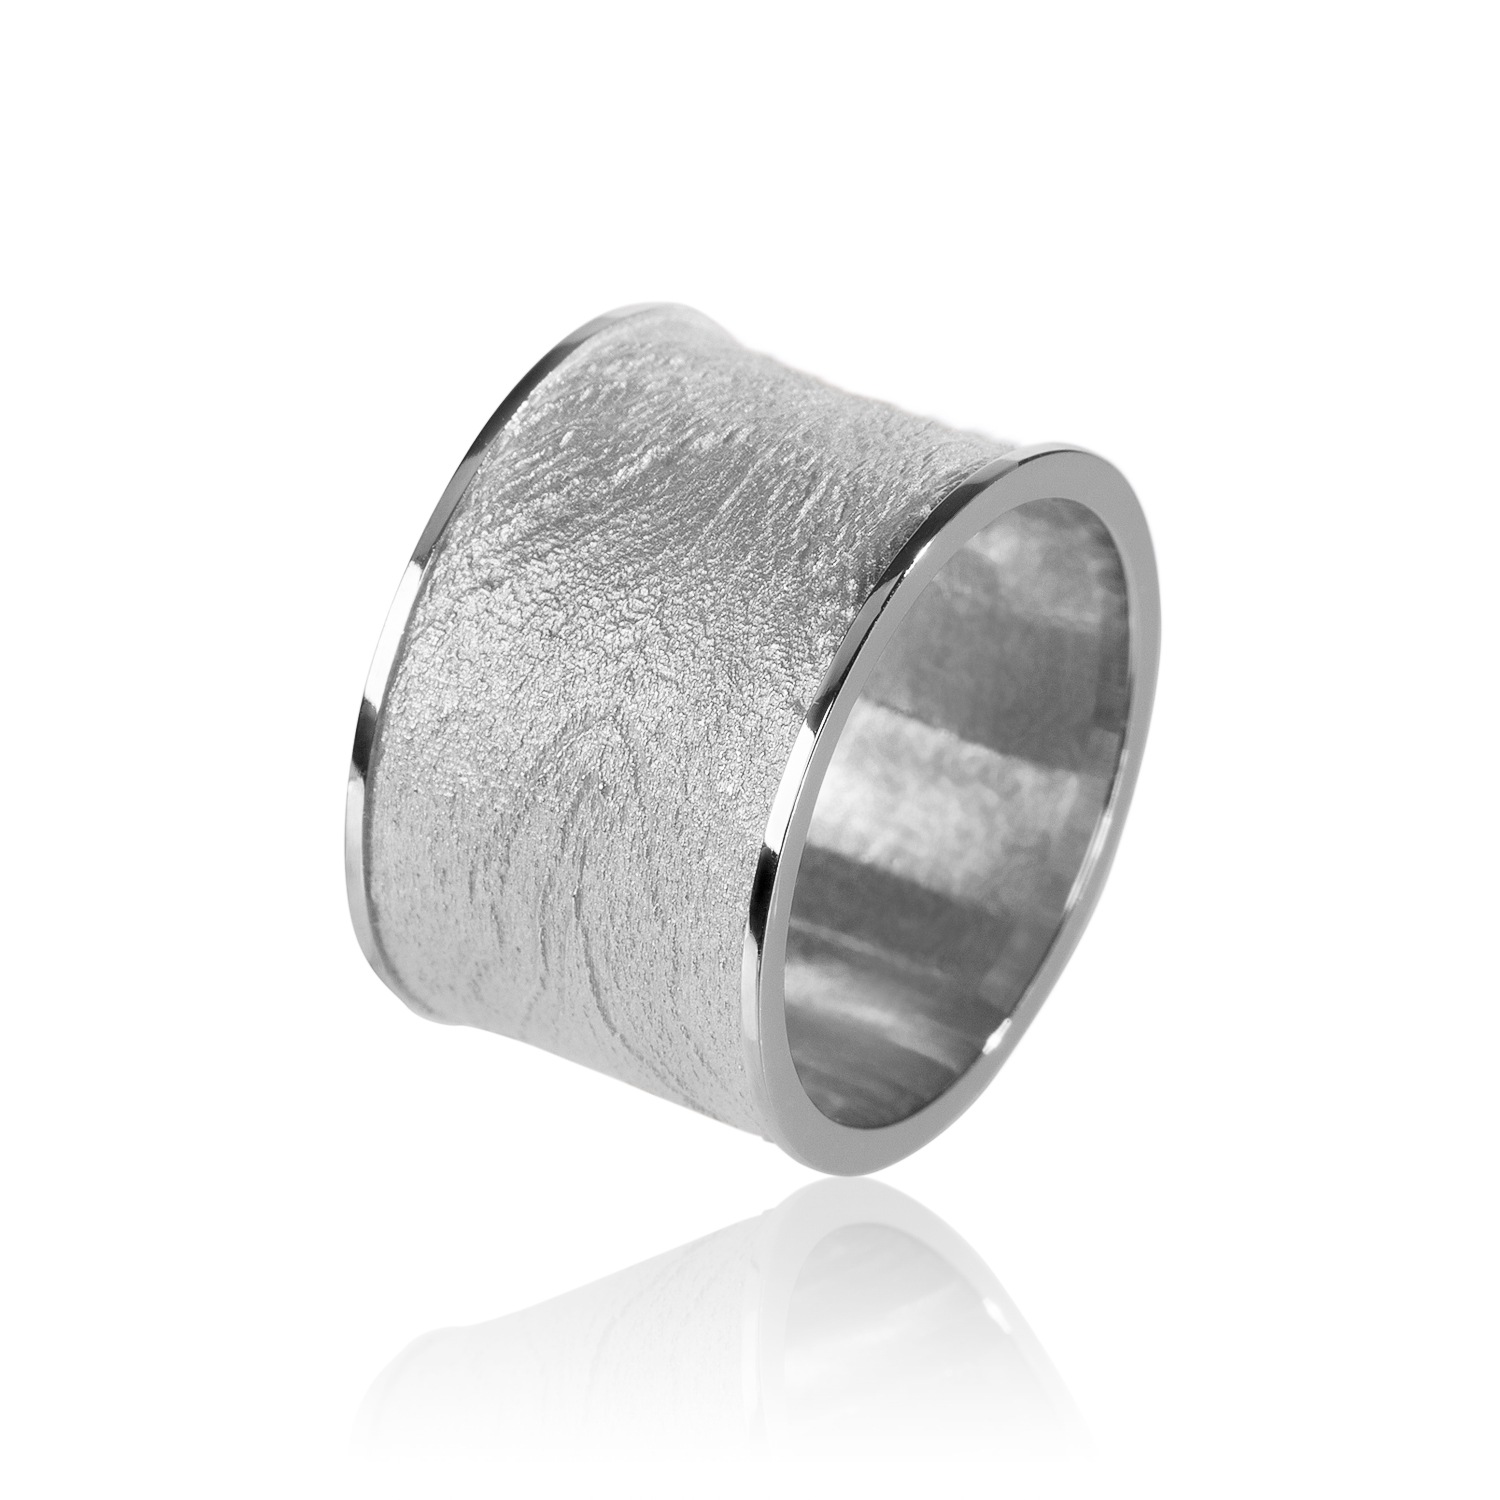 Silver Mies ring